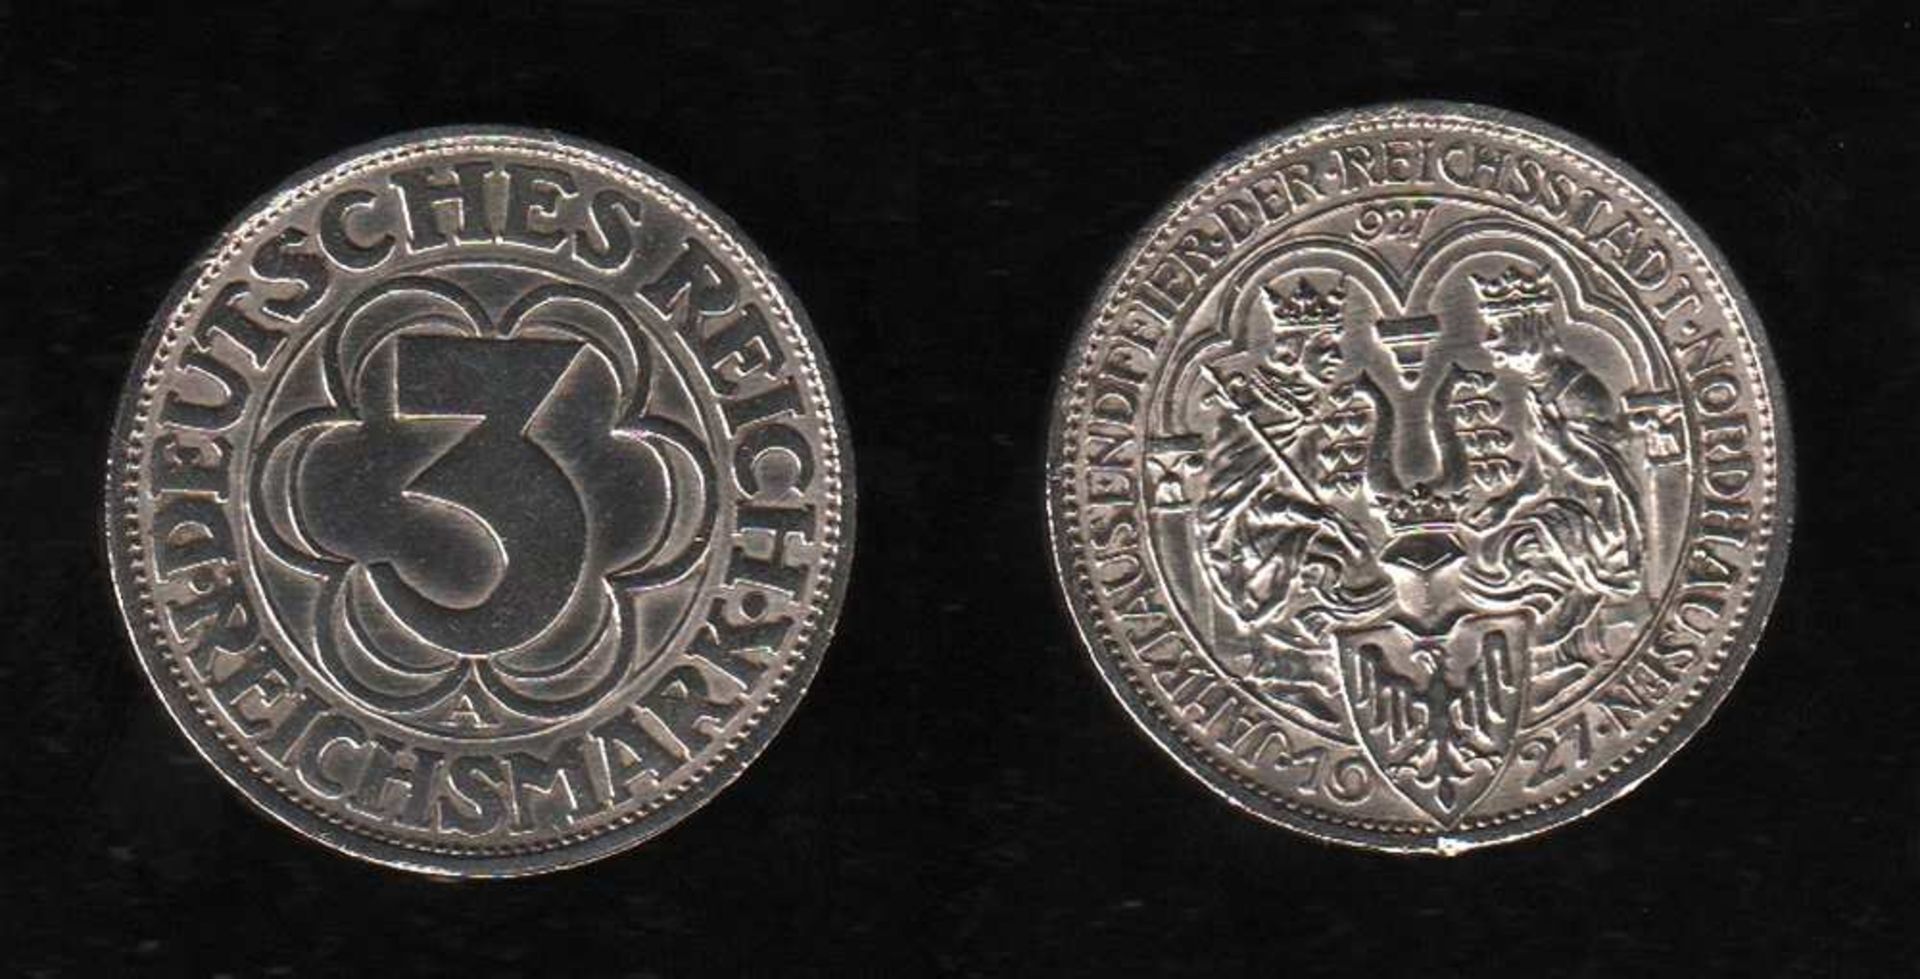 # Deutsches Reich. Silbermünze. 3 Reichsmark. 1000 Jahre Nordhausen. A 1927. Vorderseite: Kaiser